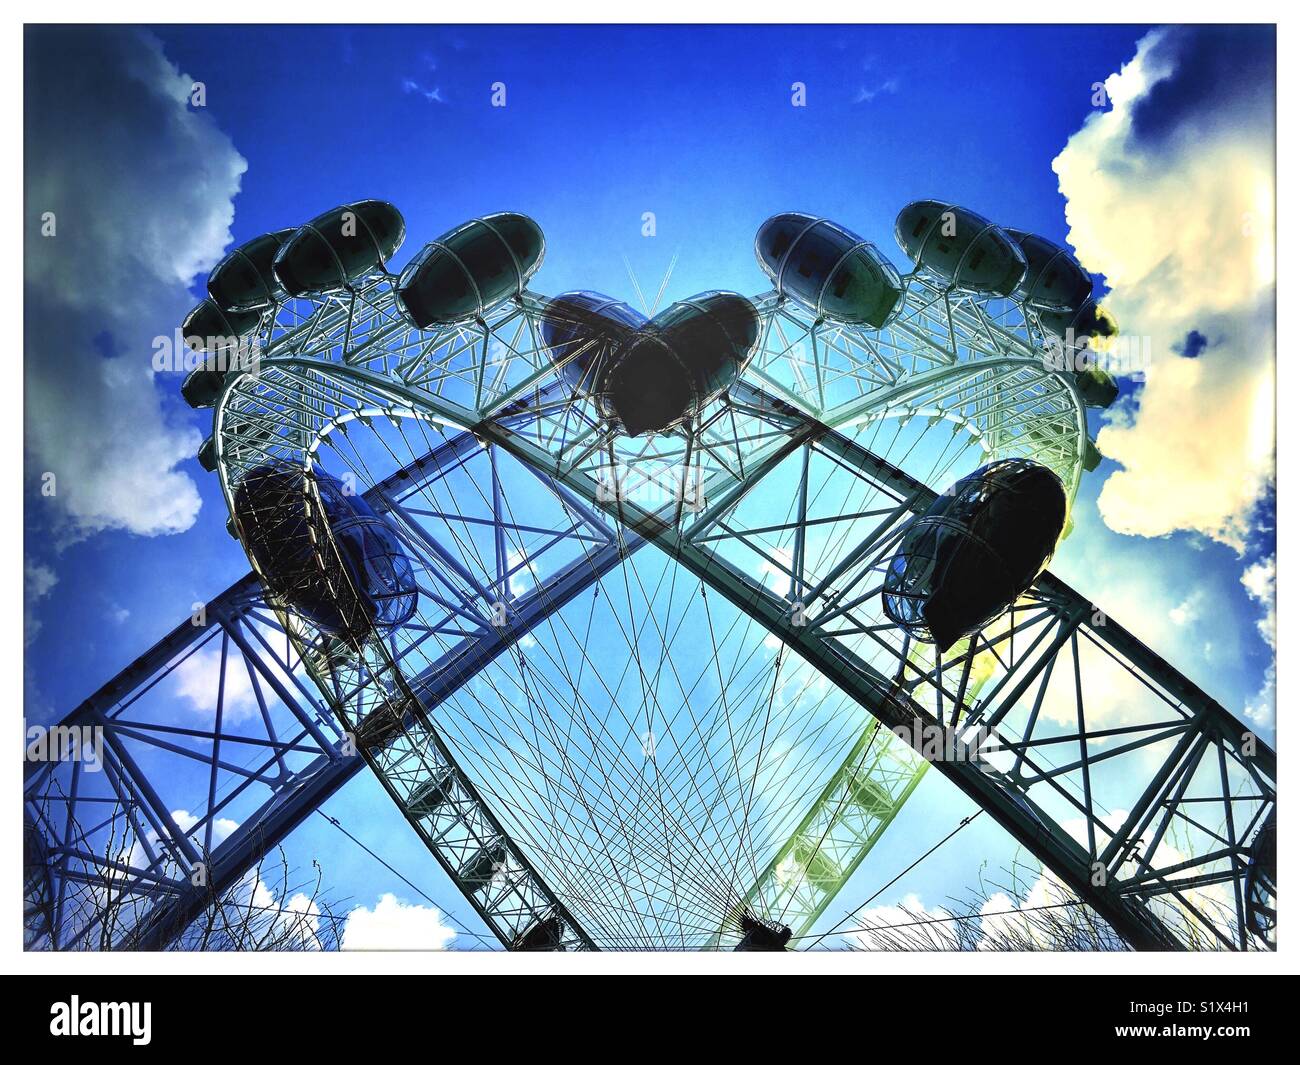 Double Exposure Effekt des London Eye, reflektiert eine Herzform gegen einen bewölkten Himmel zu machen. Stockfoto